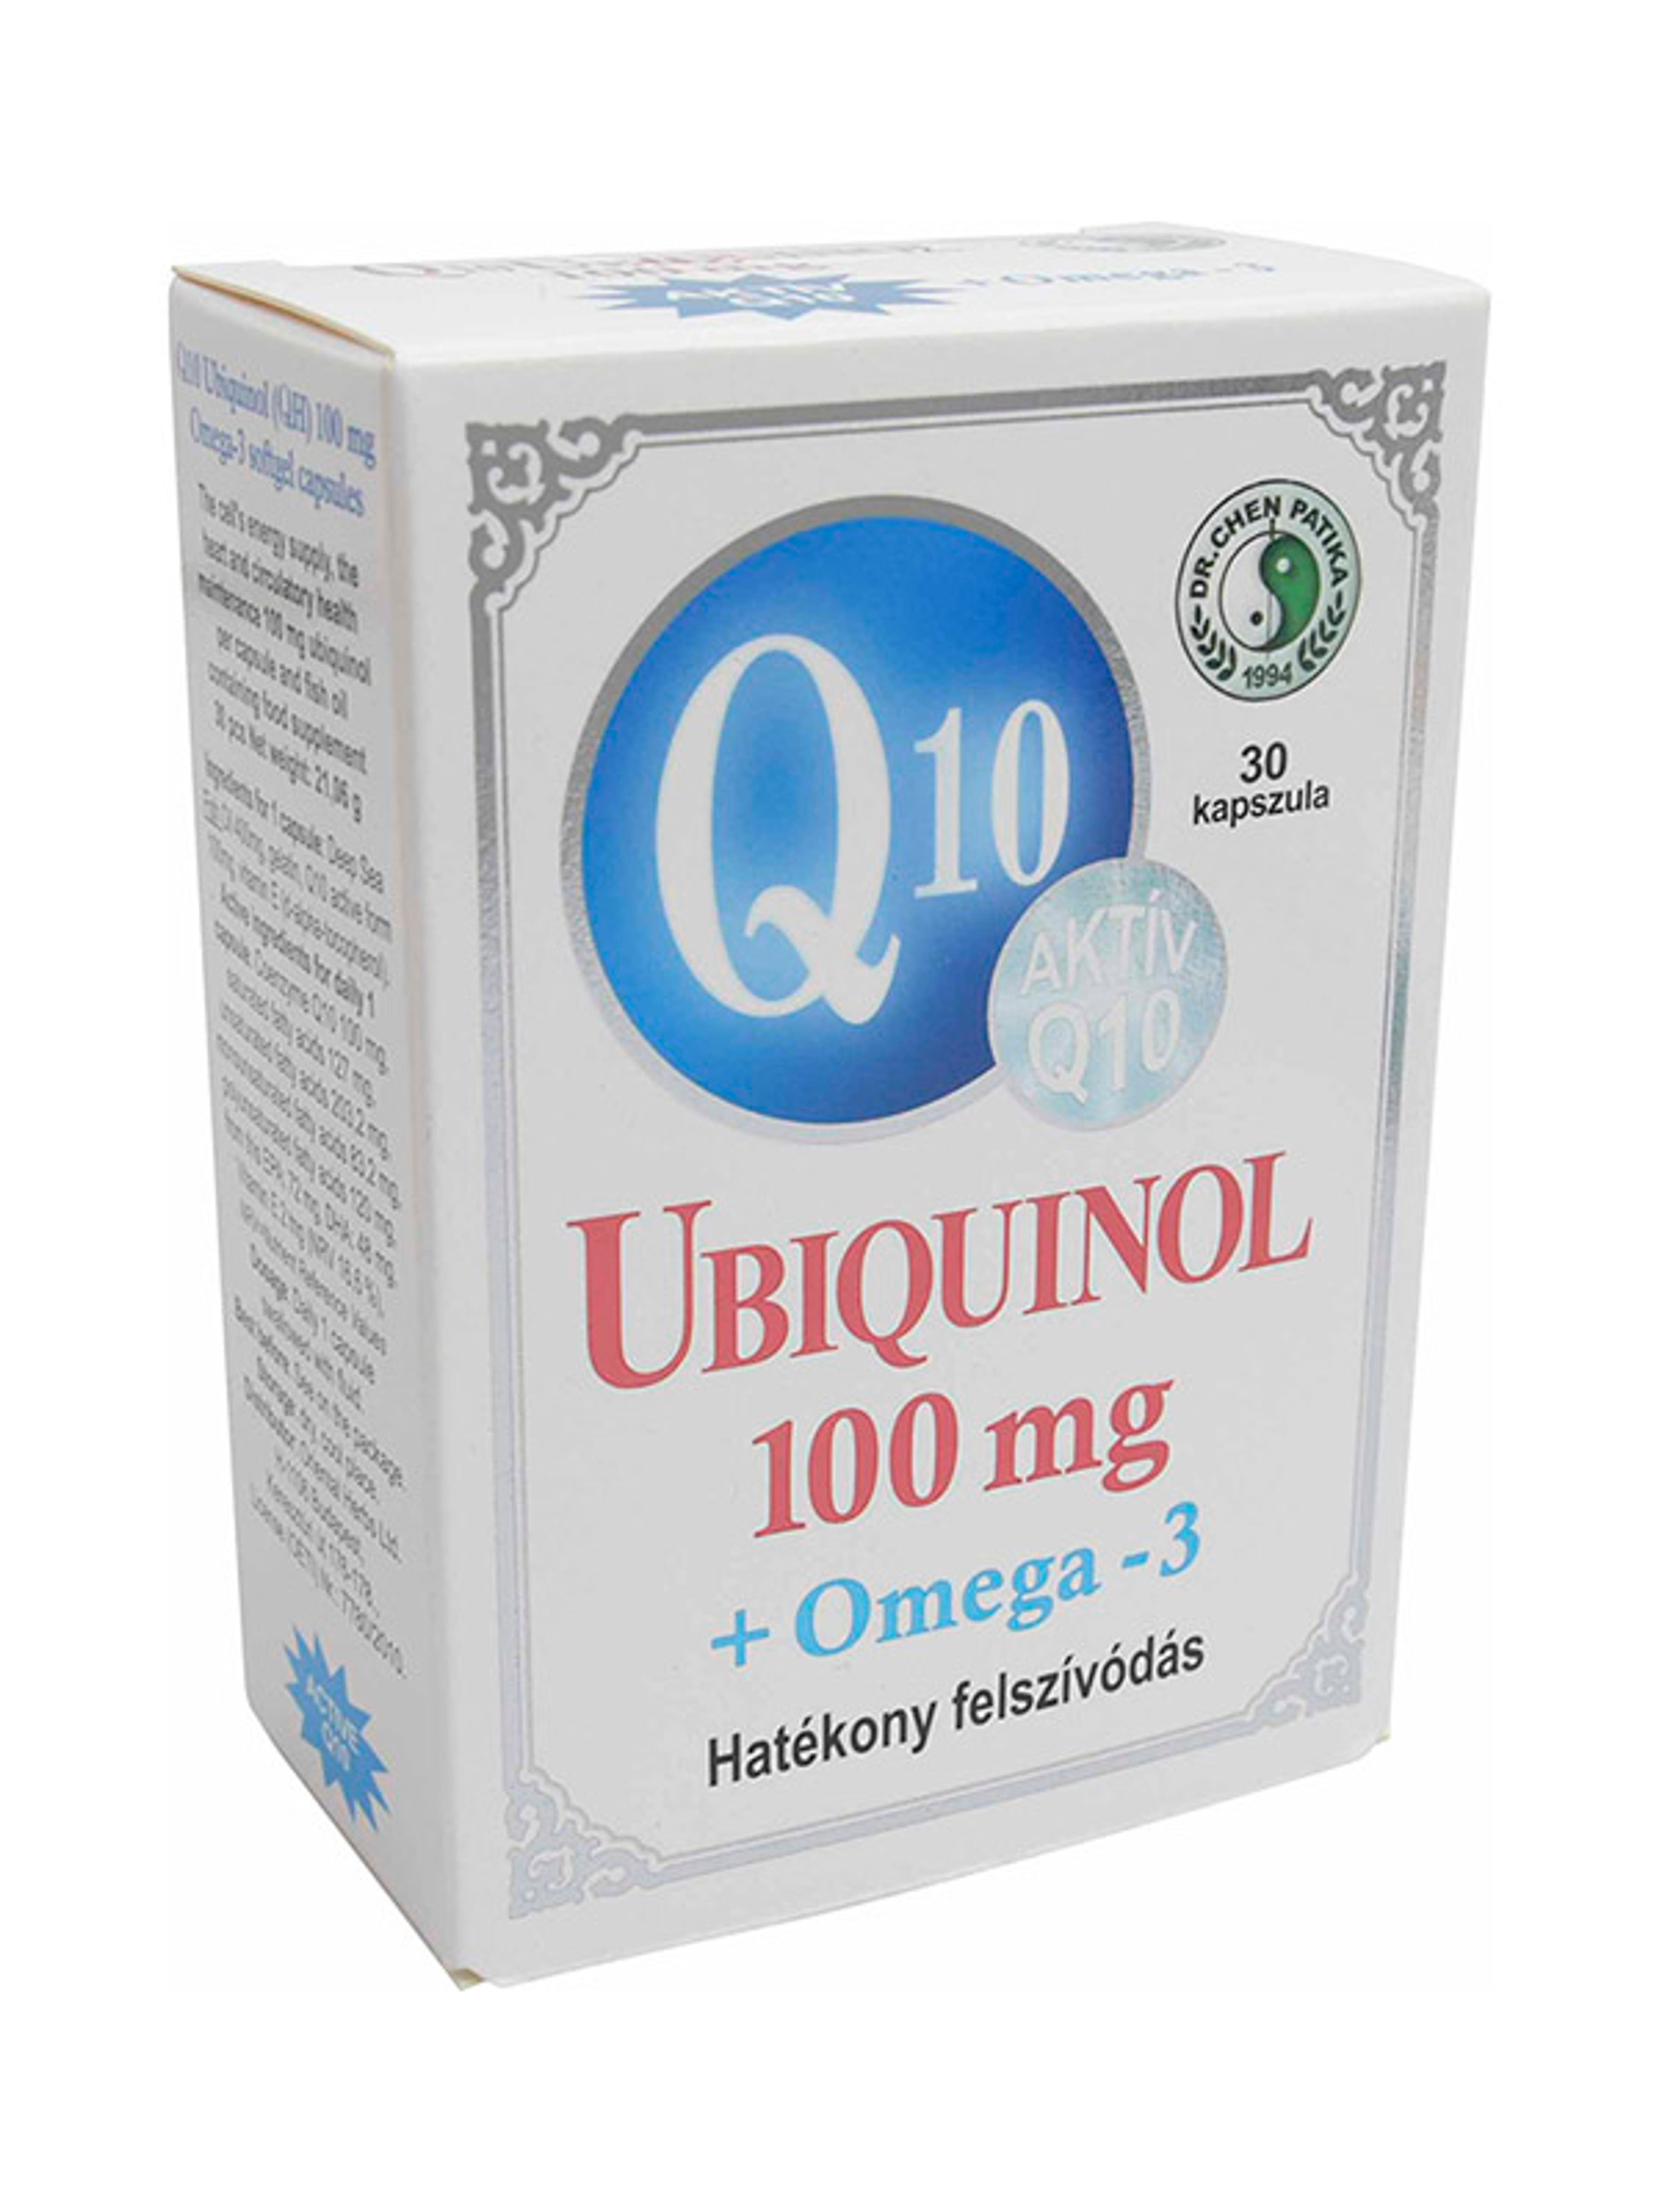 Oriental Q10 Ubiquinol 10mOg+ Omega-3 Kapszula - 30 db